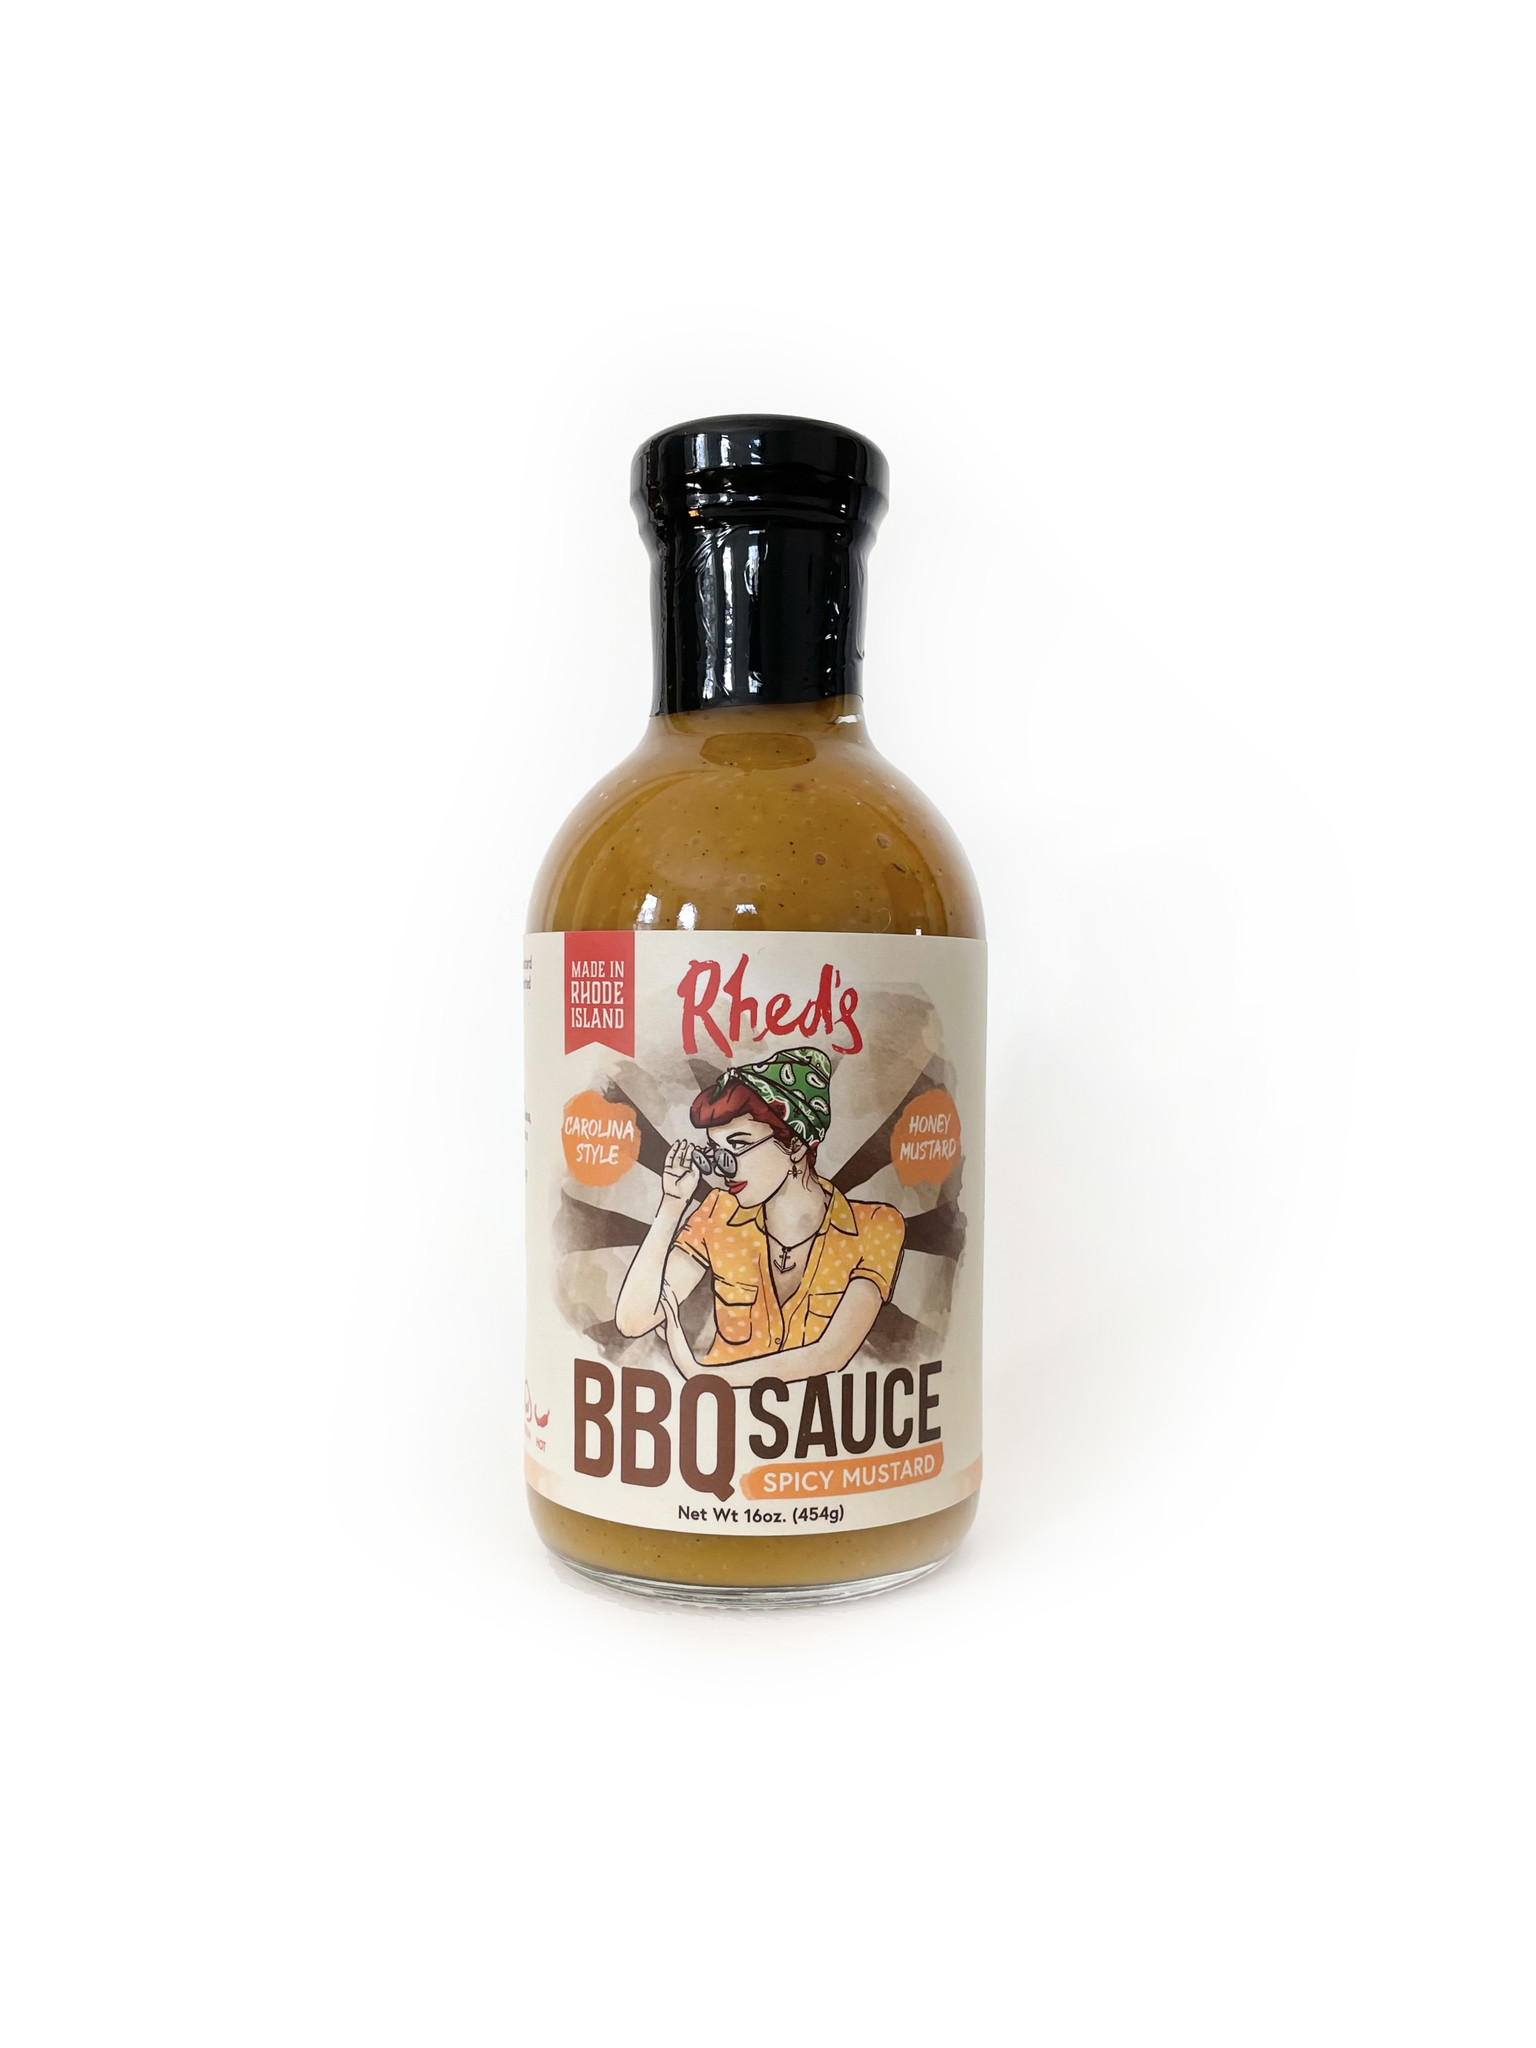 Rhed's Spicy Mustard BBQ Sauce, 16 oz.-1